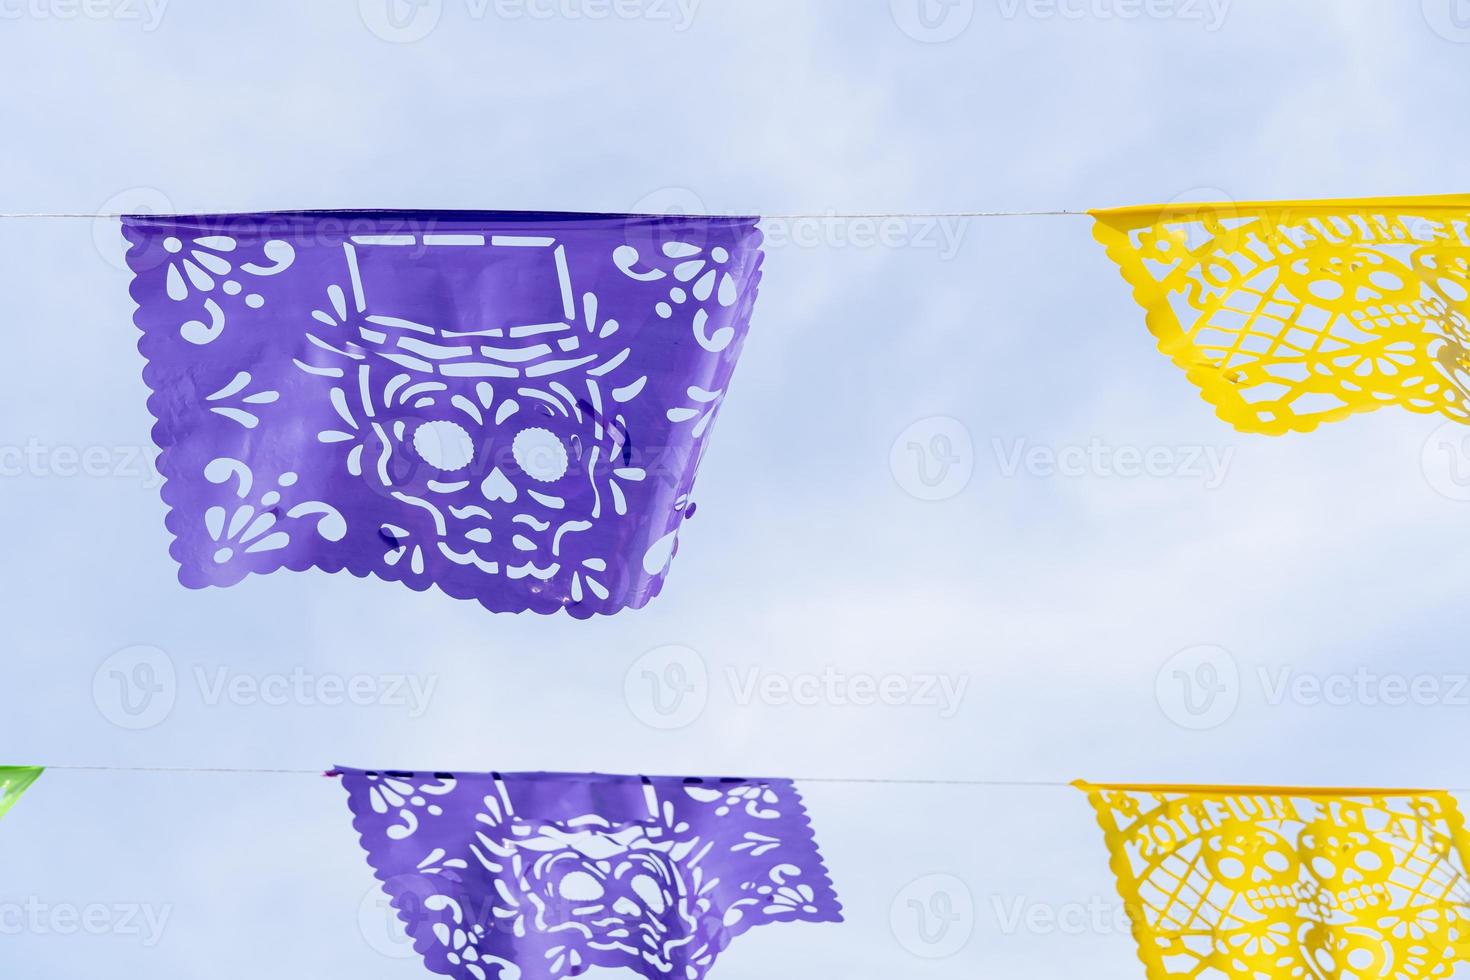 décoration jour des morts, papel picado violet et jaune, fond de ciel, mexique photo